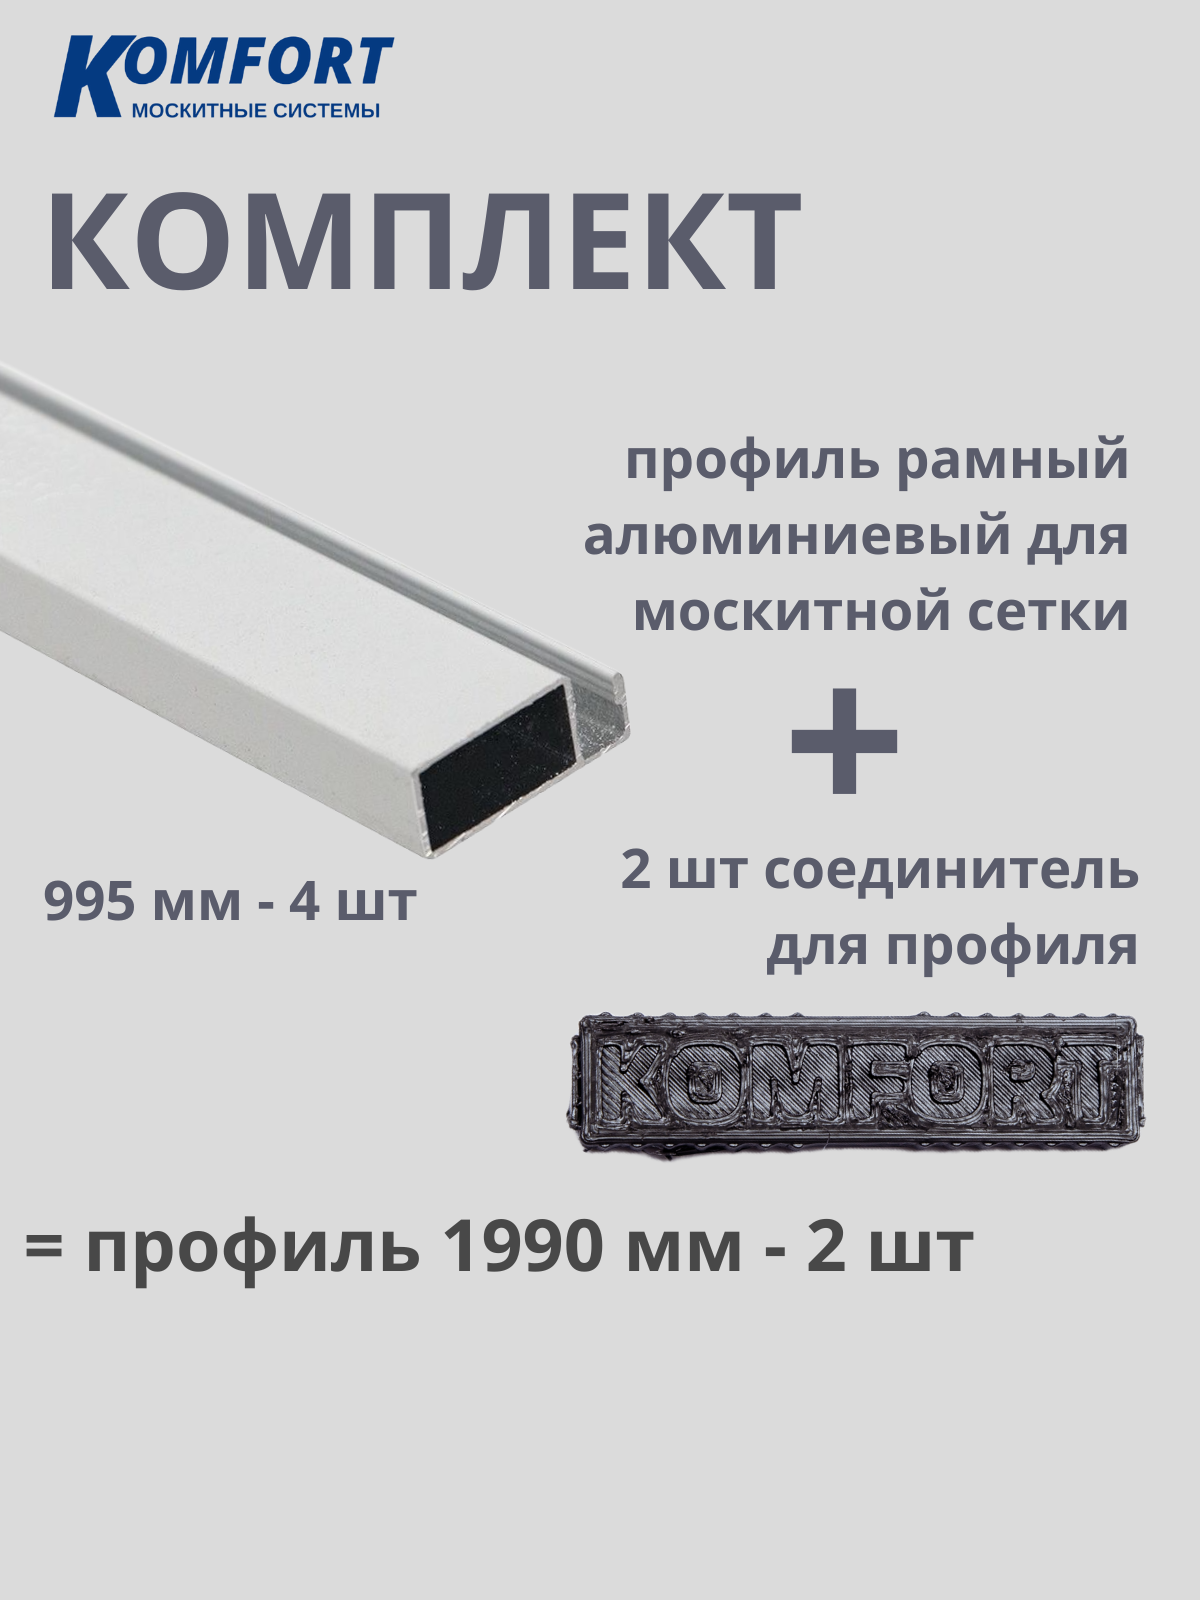 Комплект профиль рамный алюминиевый для москитной сетки с соединителем белый 1490 мм 4 шт